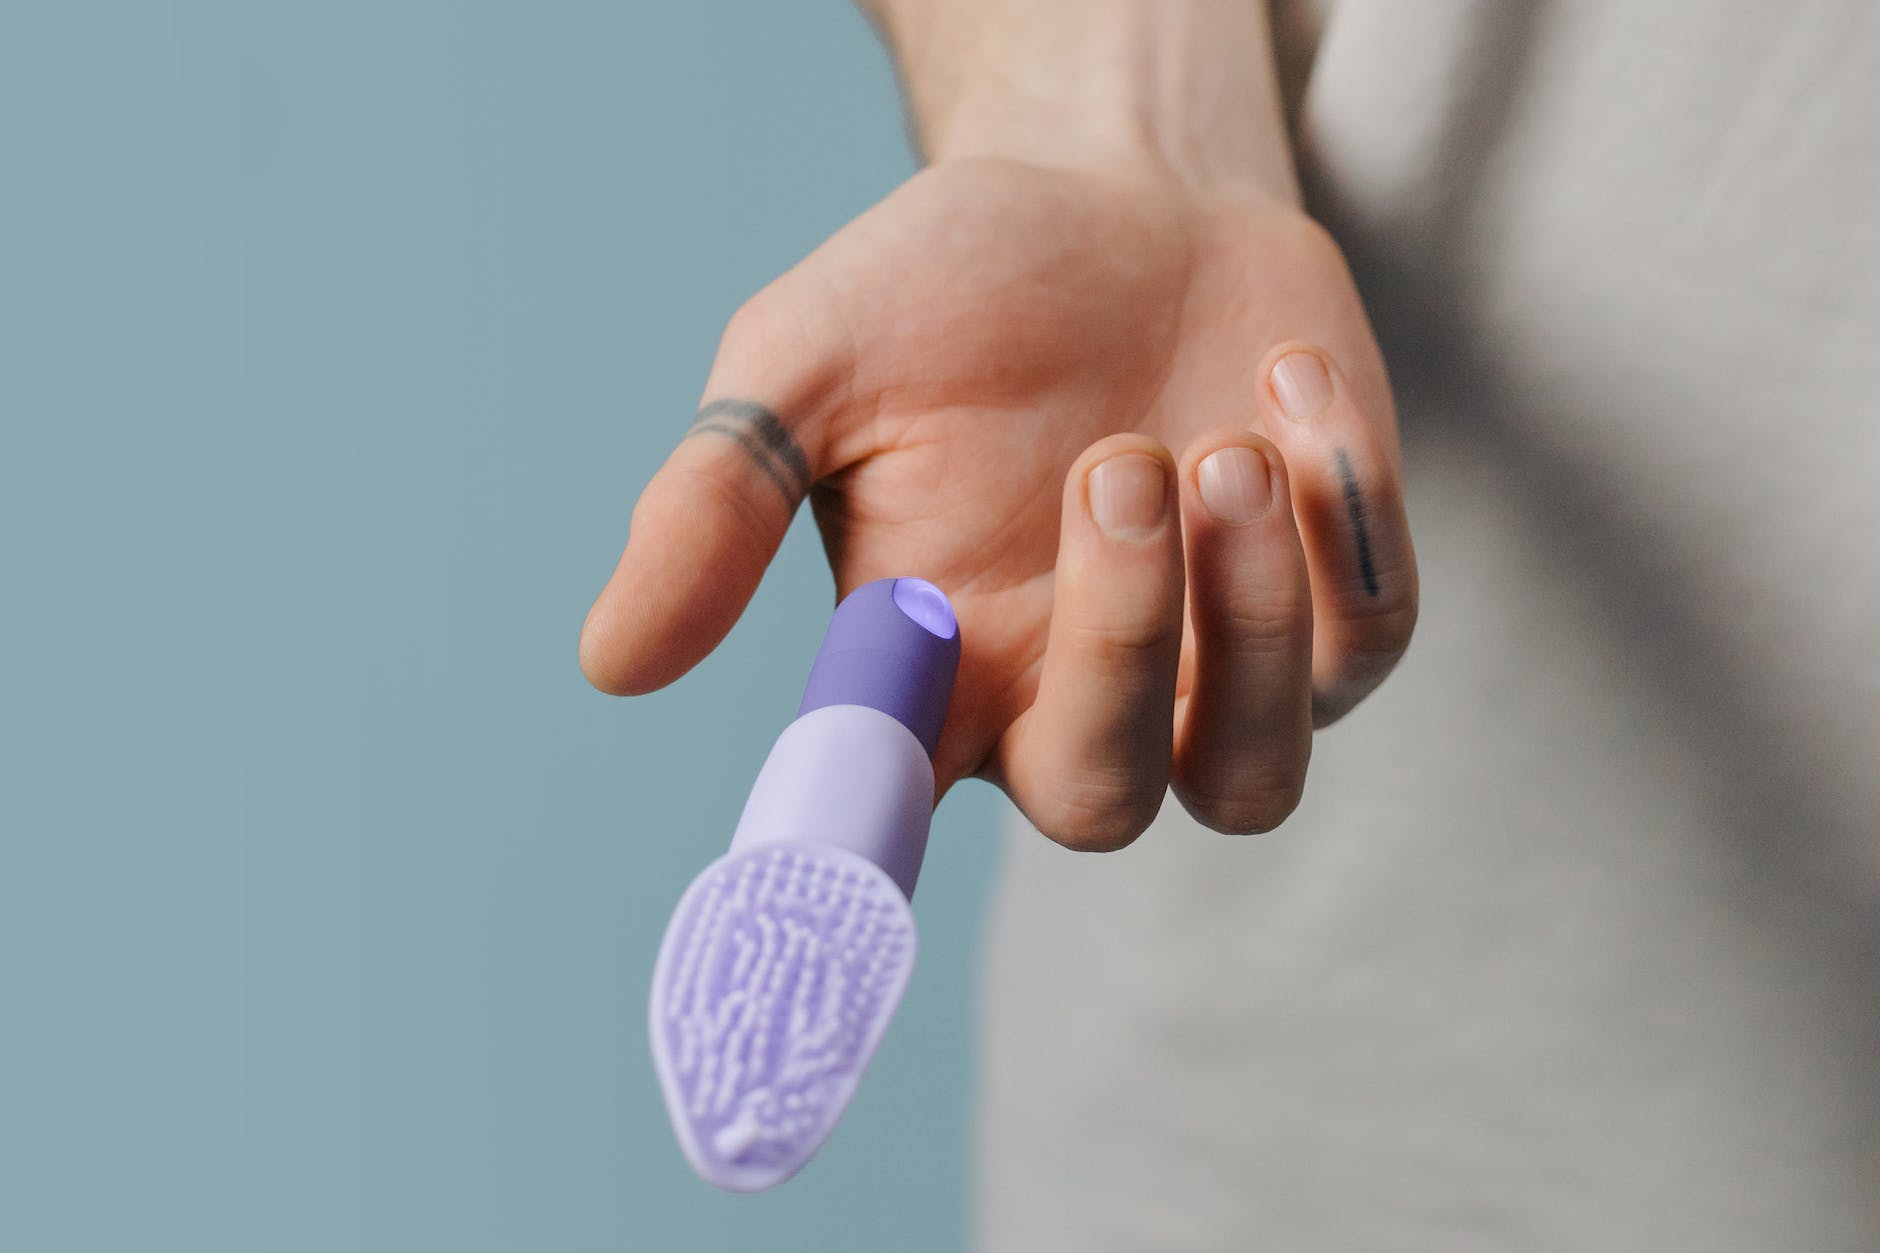 purple finger vibrator in the person s finger